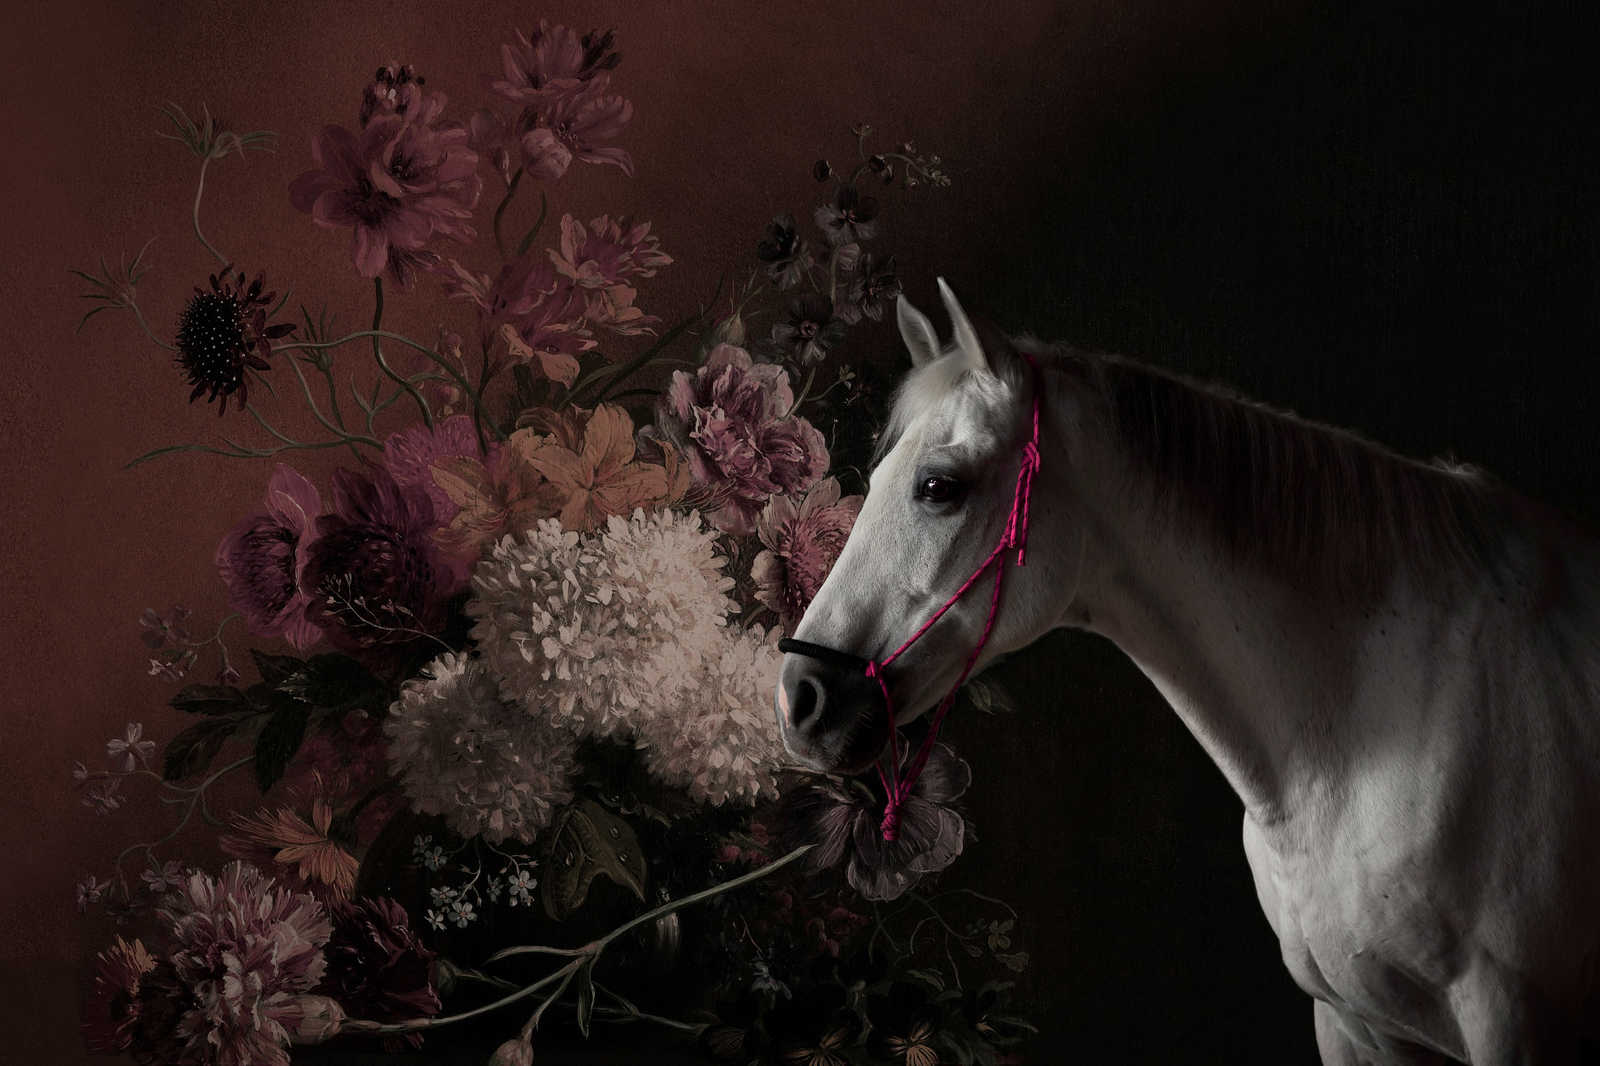             Toile Portrait de cheval avec fleurs - 0,90 m x 0,60 m
        